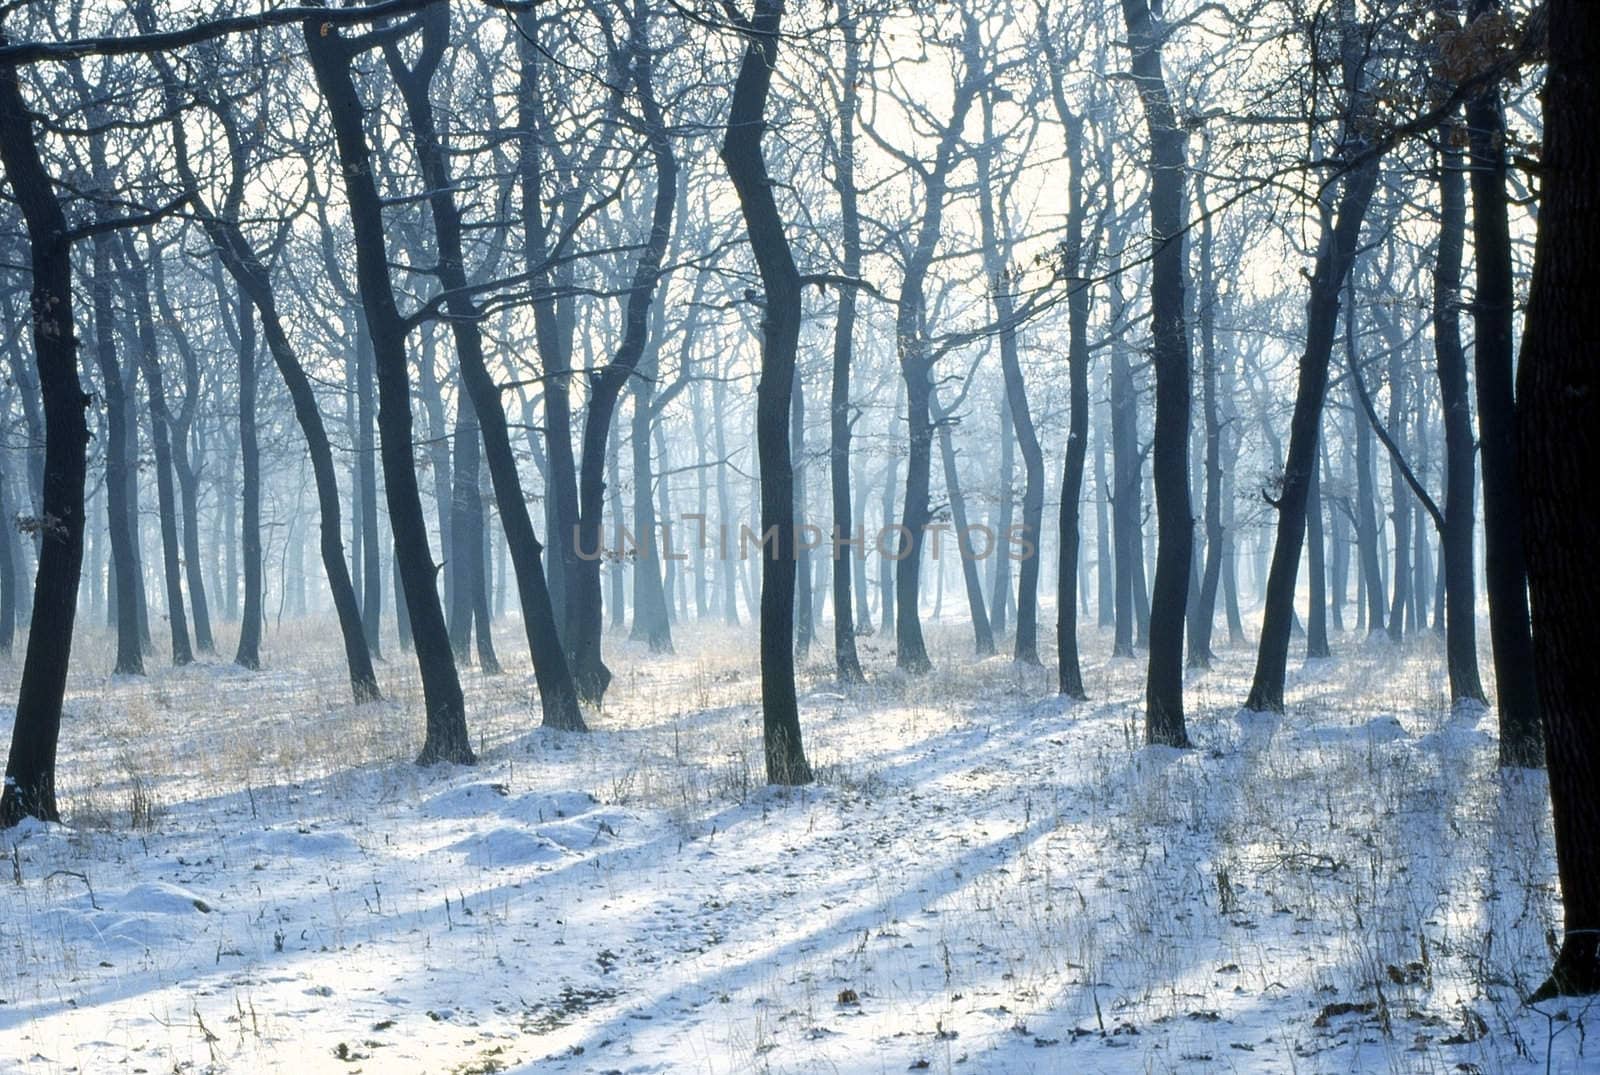 Forest in winter by jol66